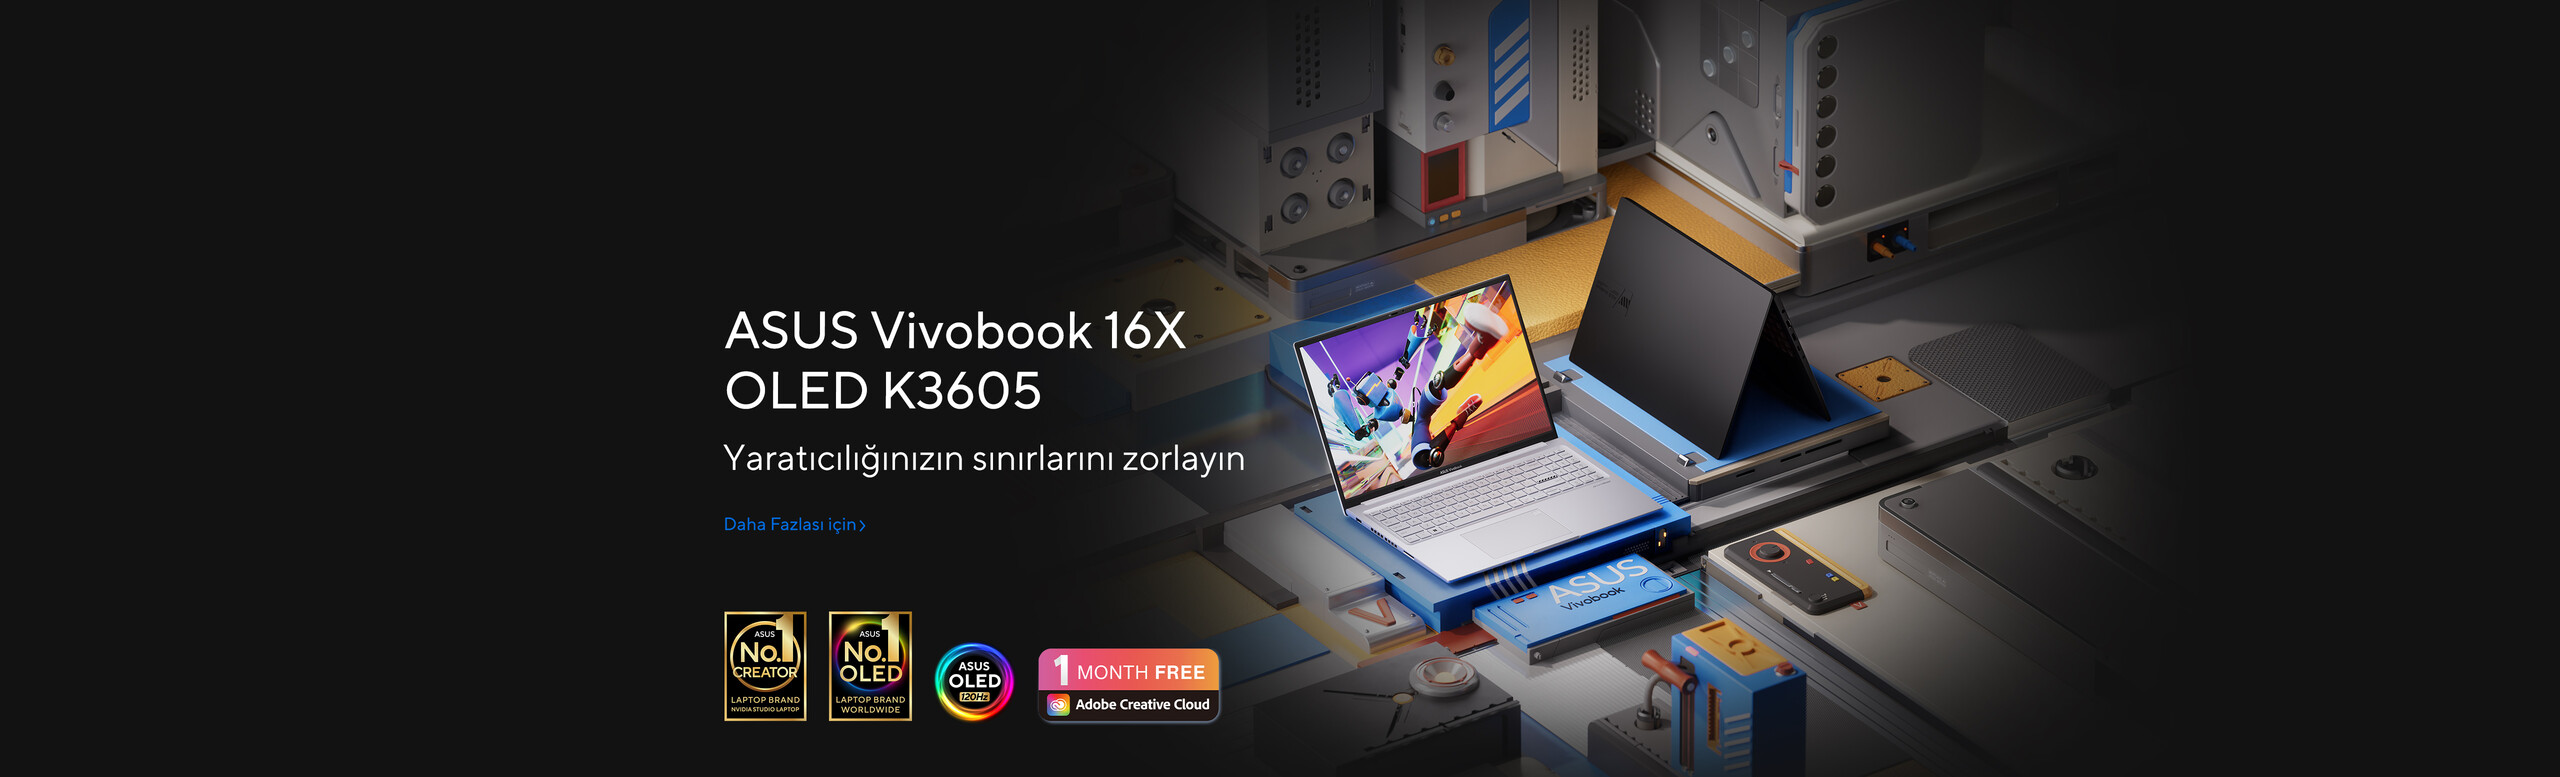 ASUS Vivobook 16X OLED K3605 ile Yaratıcılığınızın sınırlarını zorlayın!